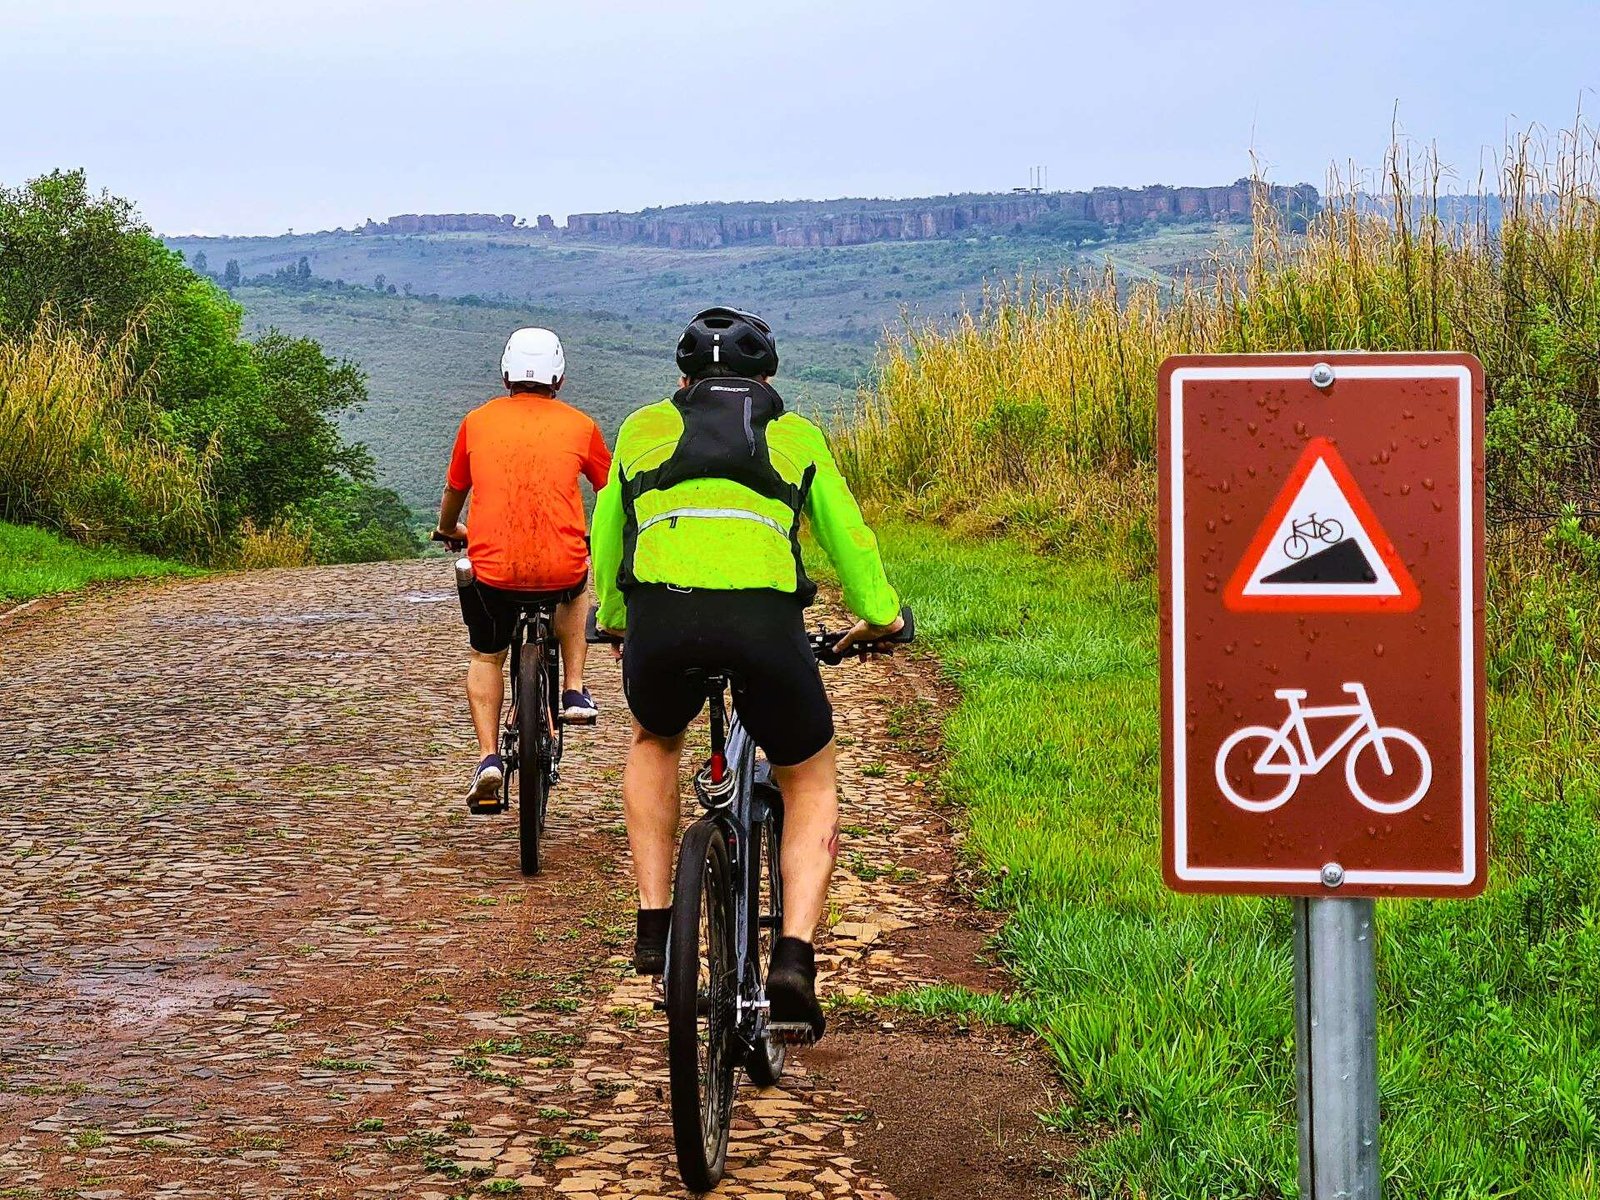 Ciclistas contemplam a vista dos Arenitos no Parque Vila Velha que o Lobi Cicloturismo em Ponta Grossa desenvolveu.